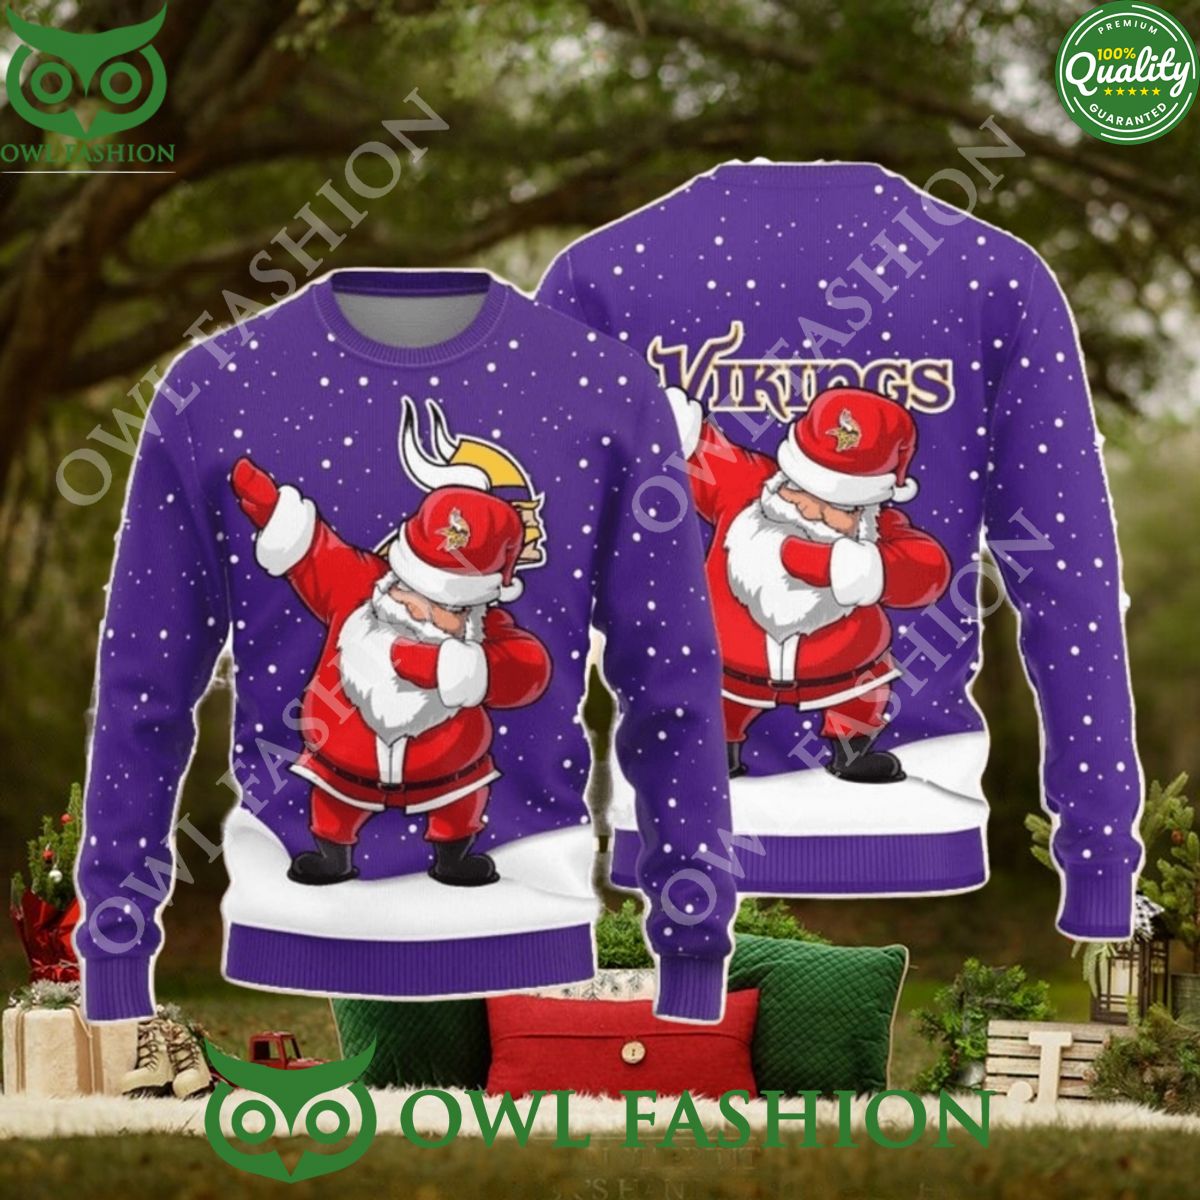 minnesota vikings dab santa new style sweater jumper 1 U7cux.jpg